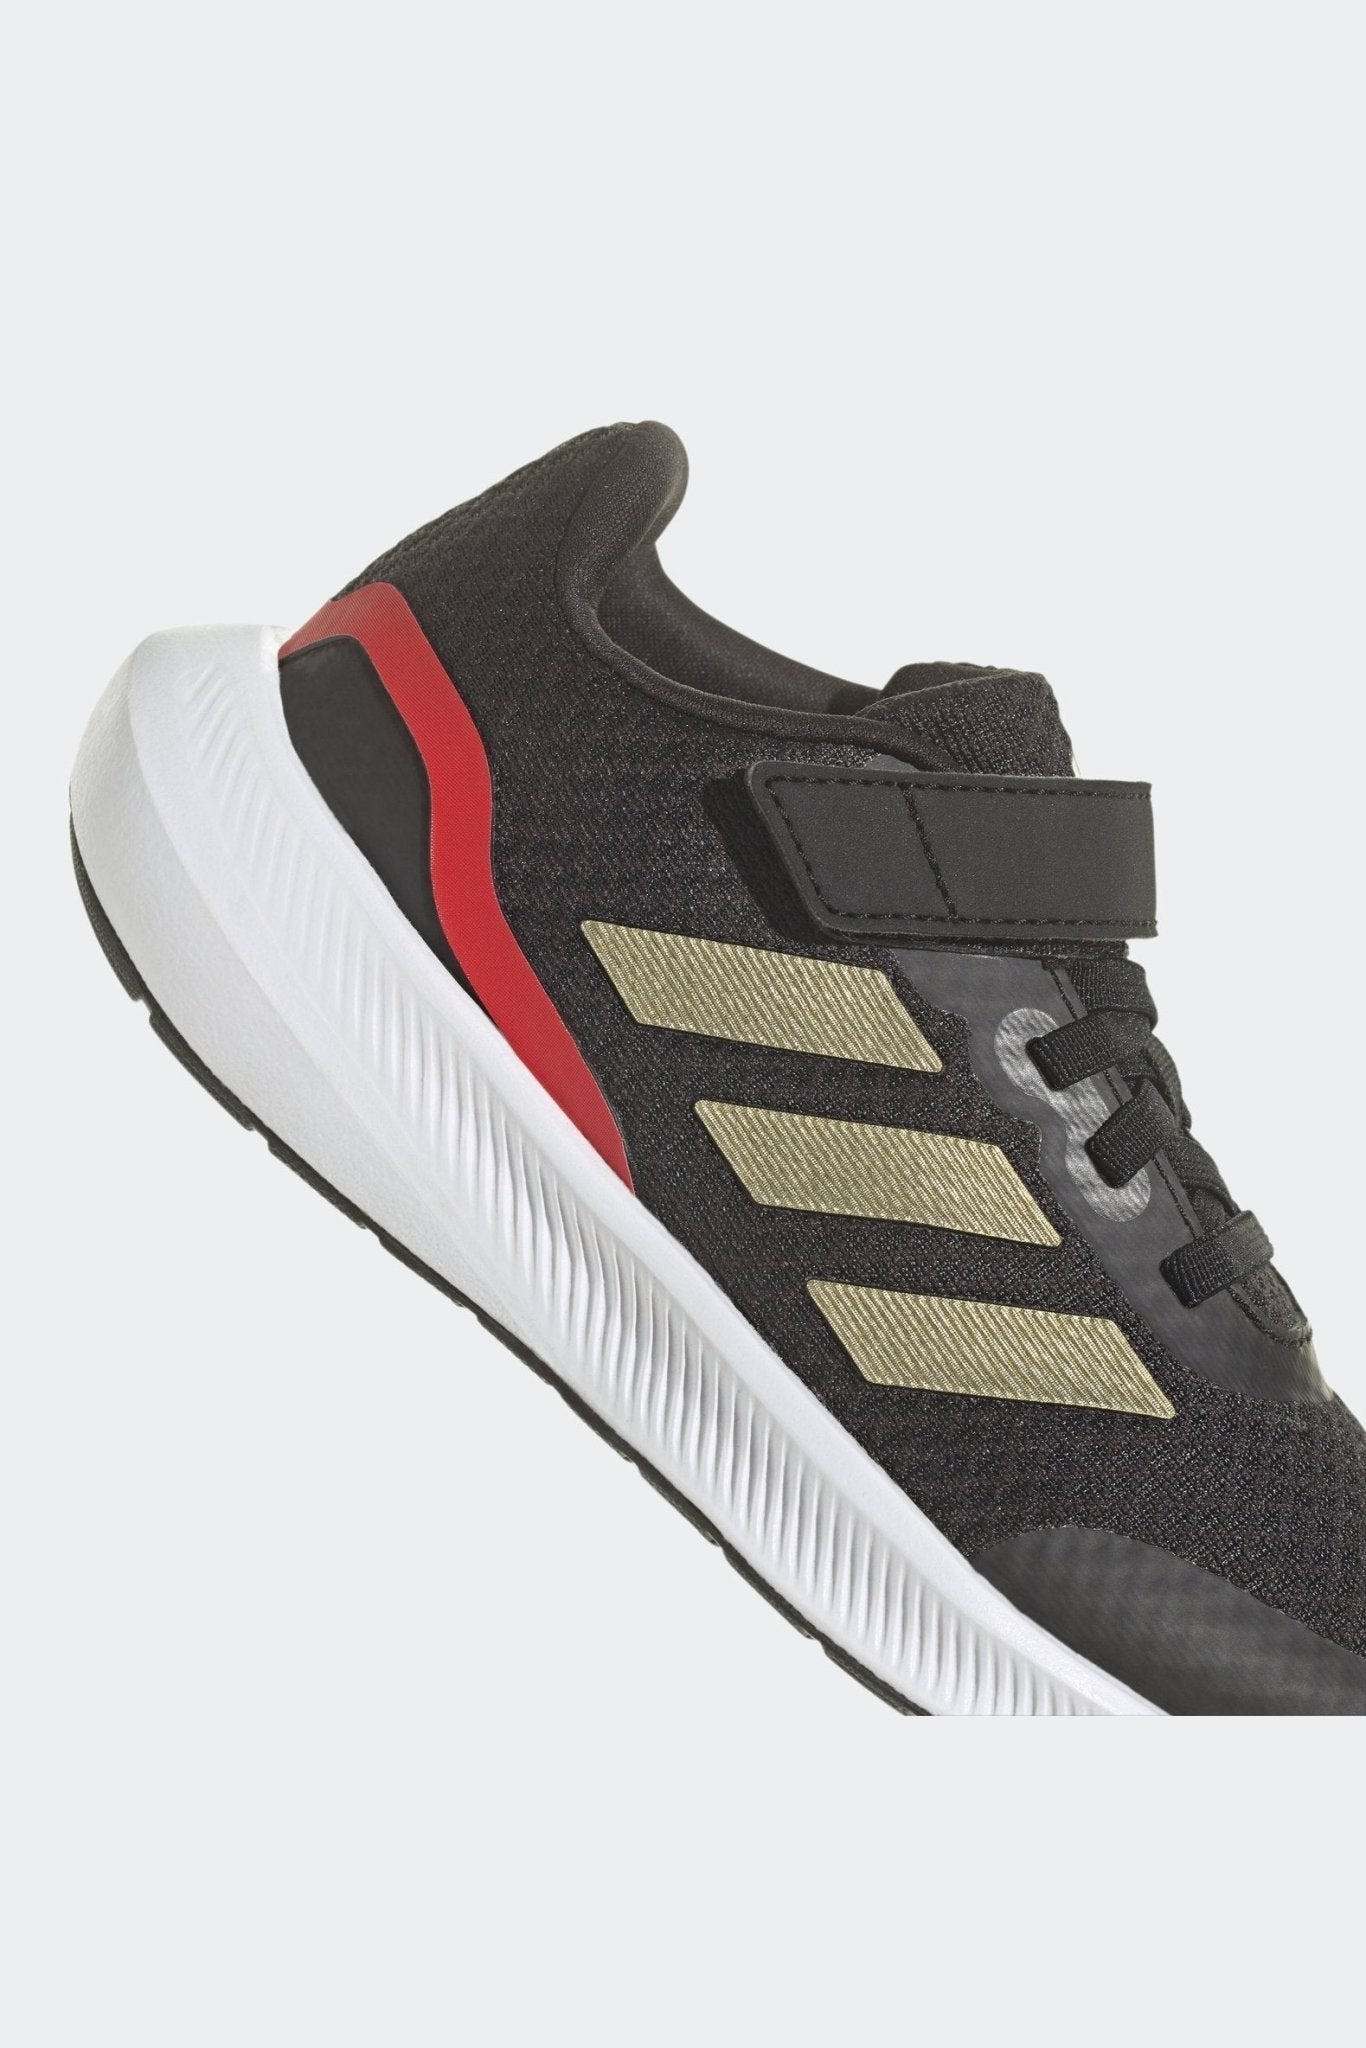 ADIDAS - נעלי ספורט לילדים RUNFALCON 3.0 בצבע שחור וזהב - MASHBIR//365